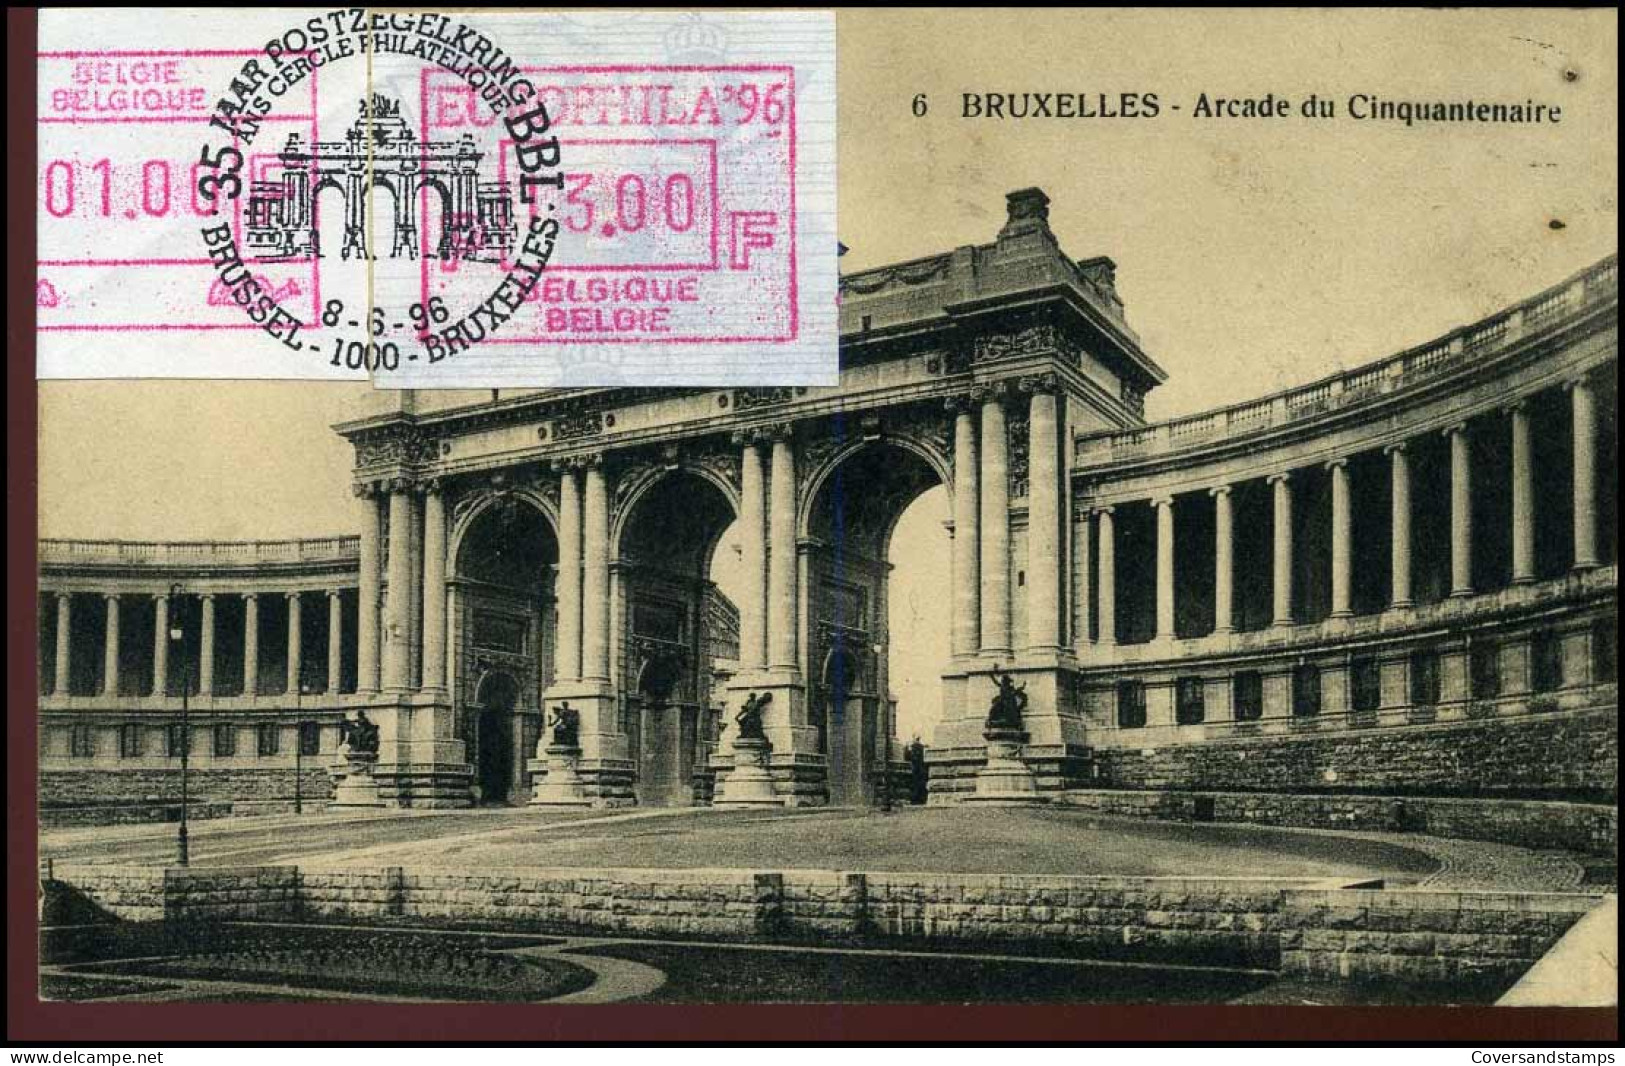 35 Jaar Postzegelkring BBL, Brussel/Bruxelles - Herdenkingsdocumenten